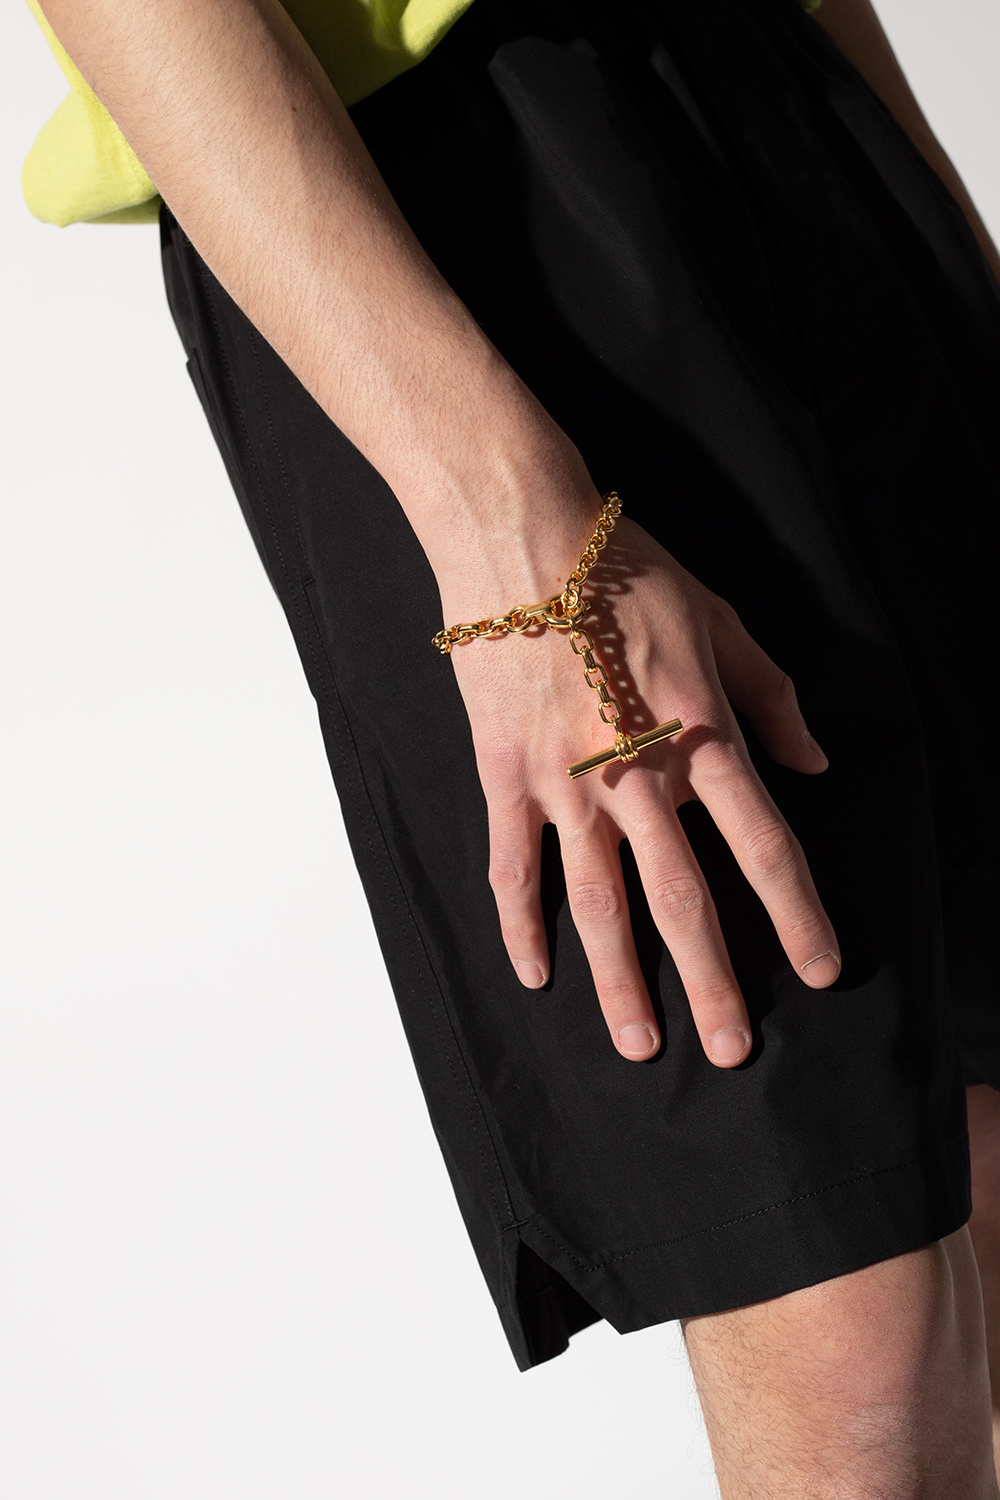 BOTTEGA VENETA: bracelet in double bicolor knit - Gold